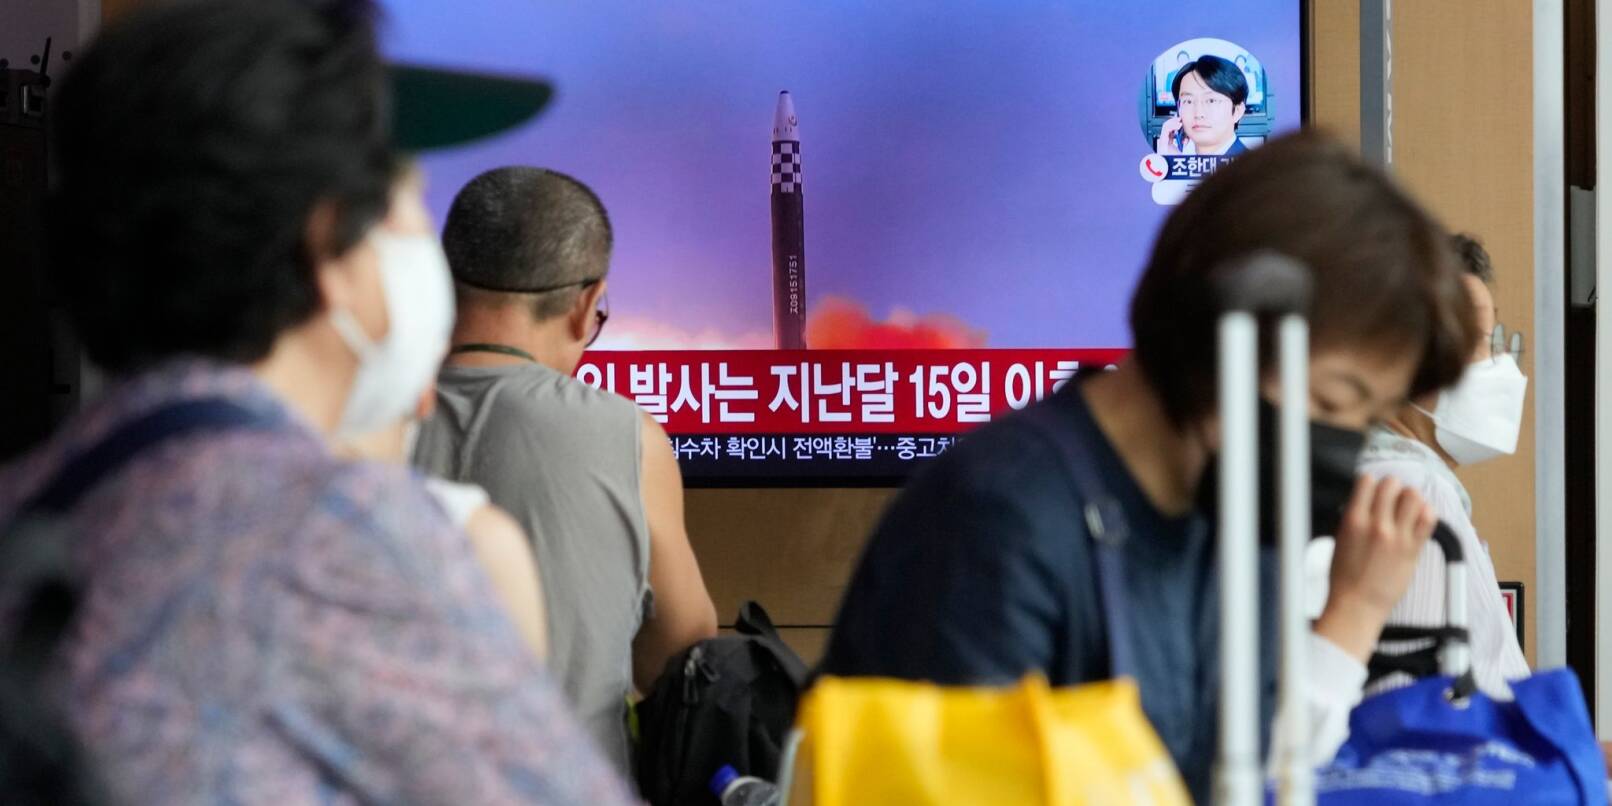 Ein Fernsehbildschirm im Seouler Bahnhof zeigt ein Bild eines älteren nordkoreanischen Raketenstarts.